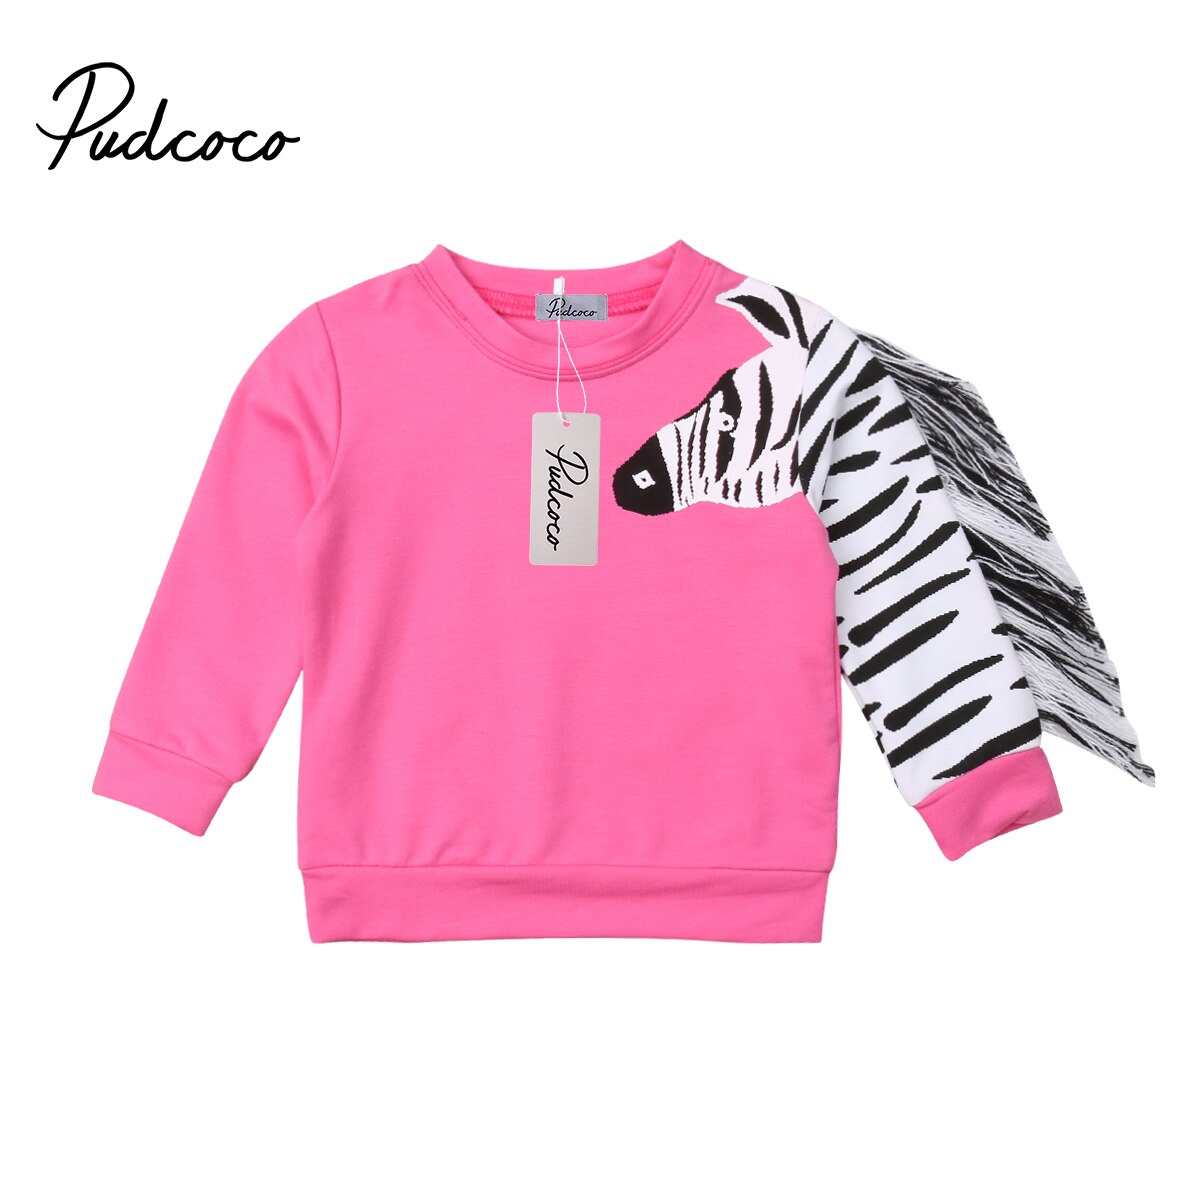 Pudcoco zebra kvast piger sweatshirt børn baby efterårstøj langærmet bomuld hættetrøjer overdele børn baby piger tøj